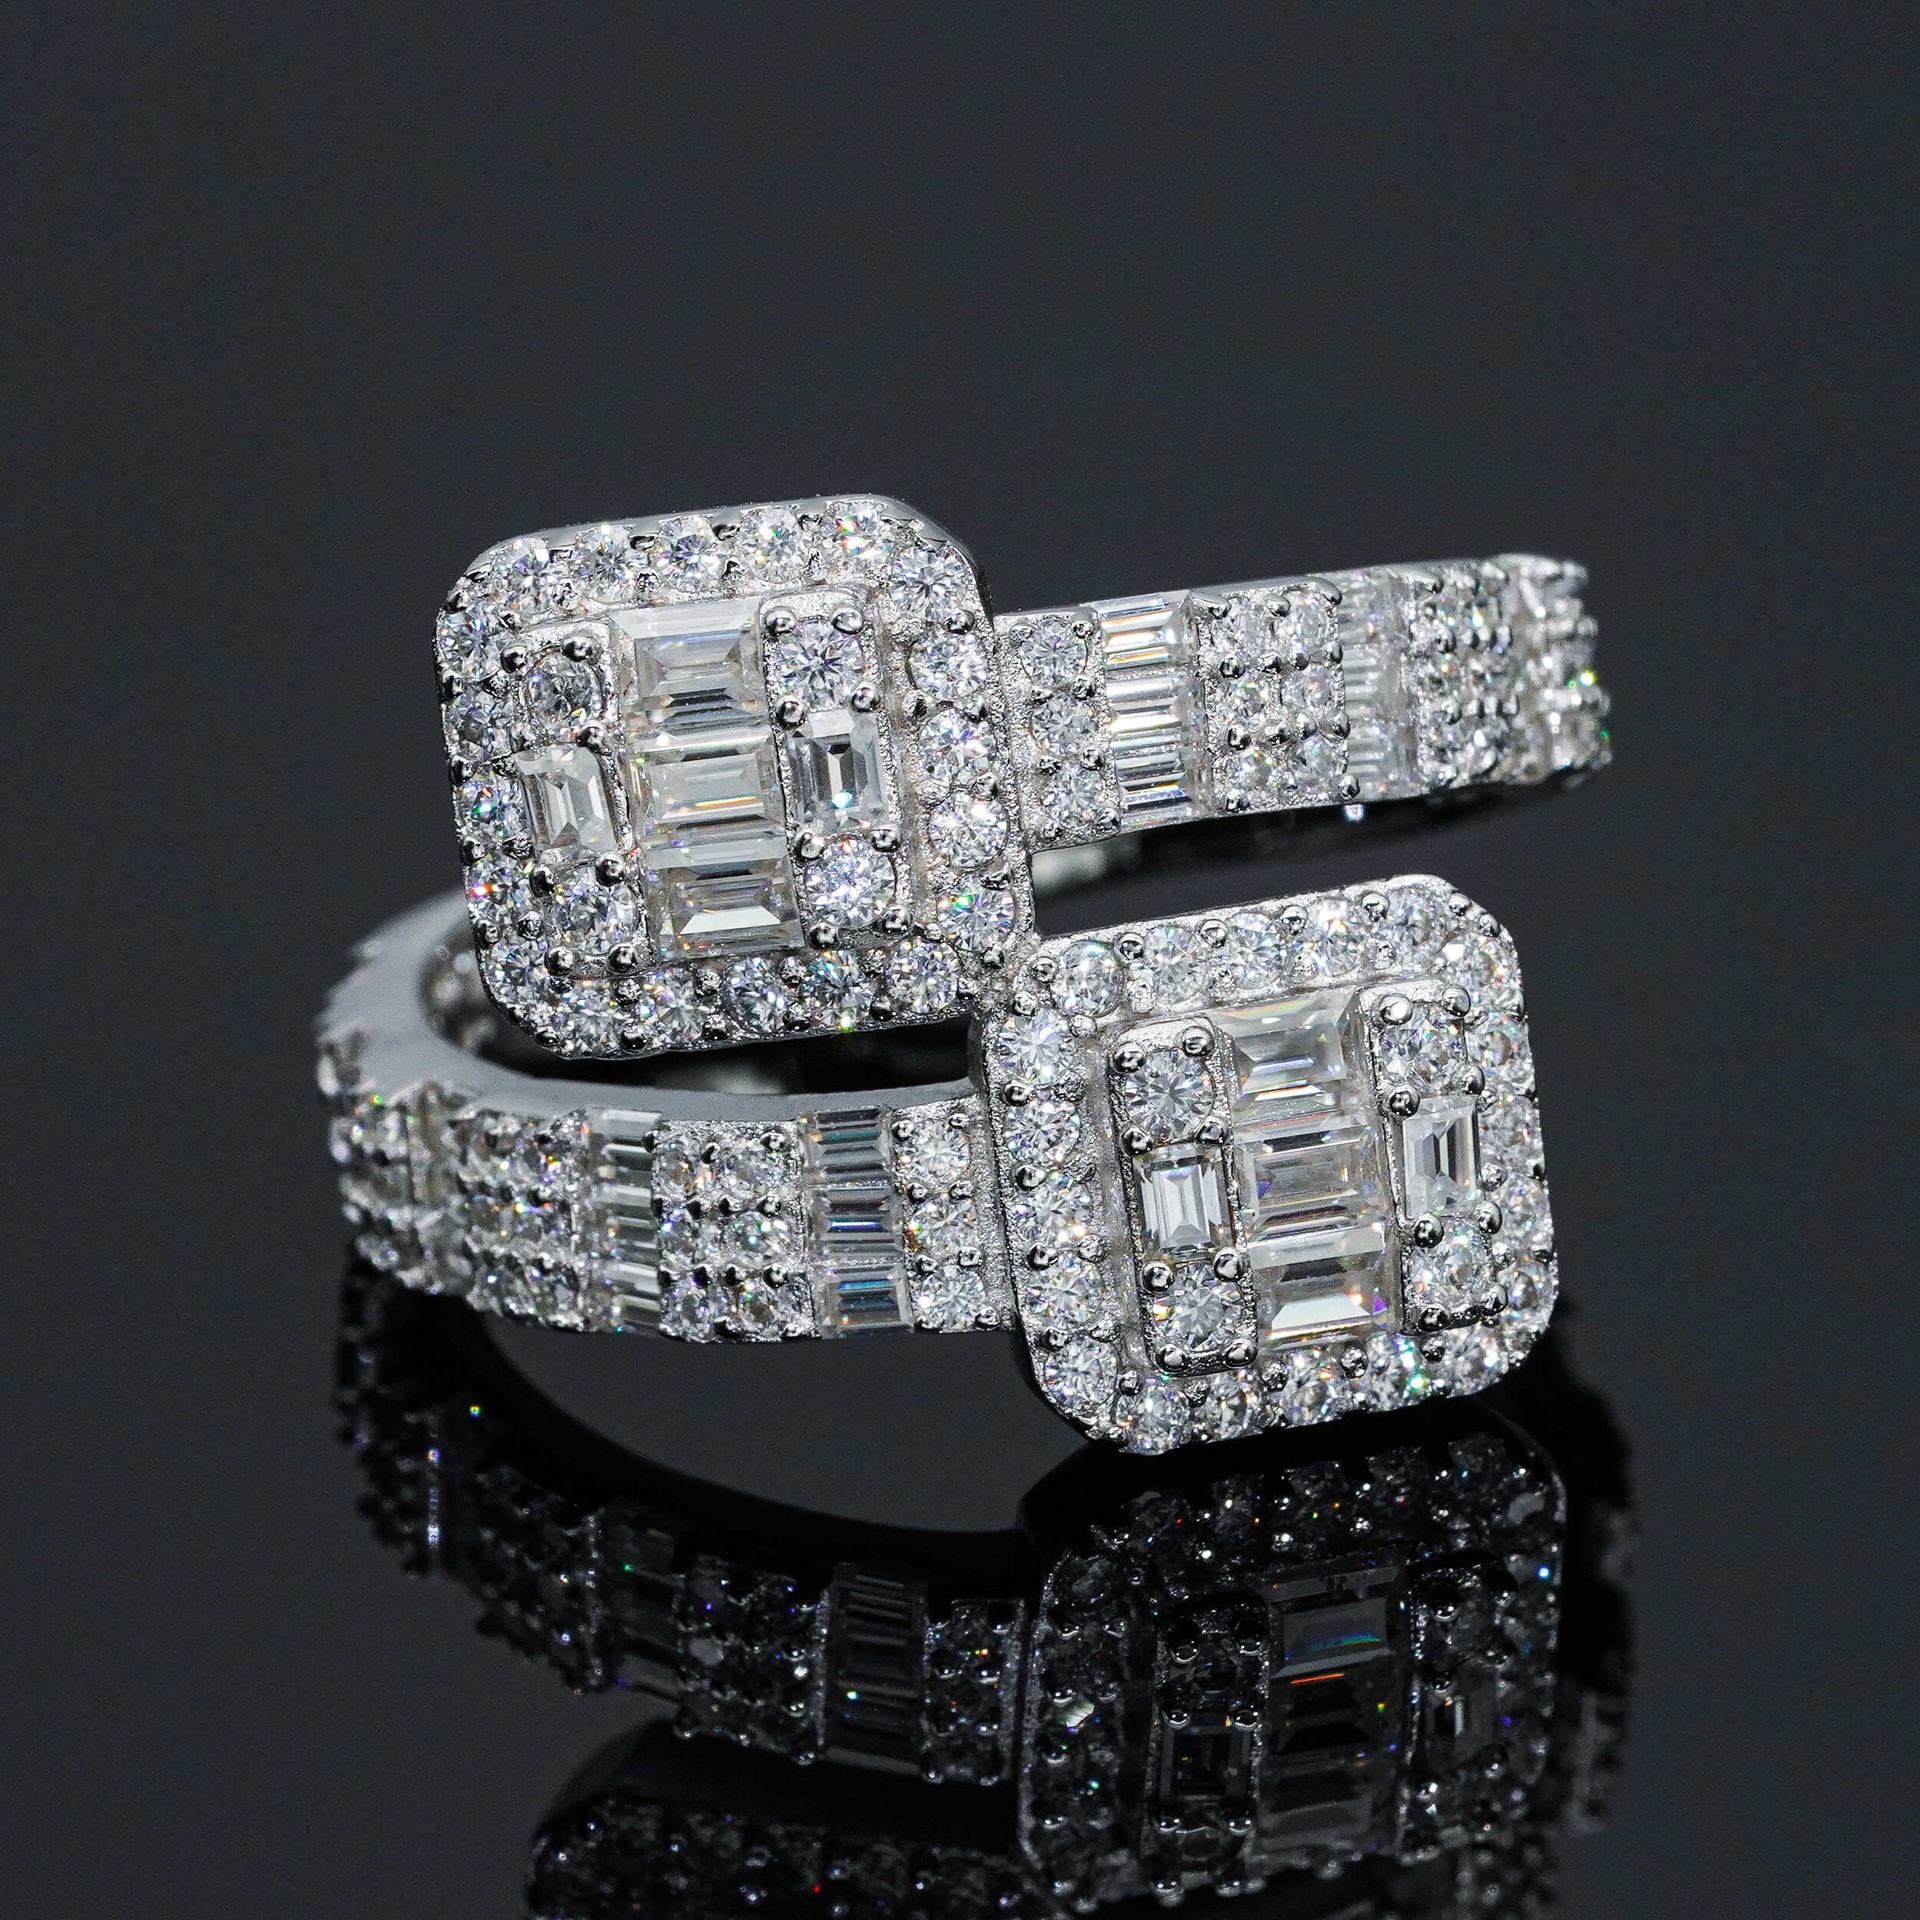 Männer Frauen Mode Moissanit Ringe Bestanden Diamant Test 925 Sterling Silber Diamant Ring für Party Hochzeit Schönes Geschenk Größe 7-10